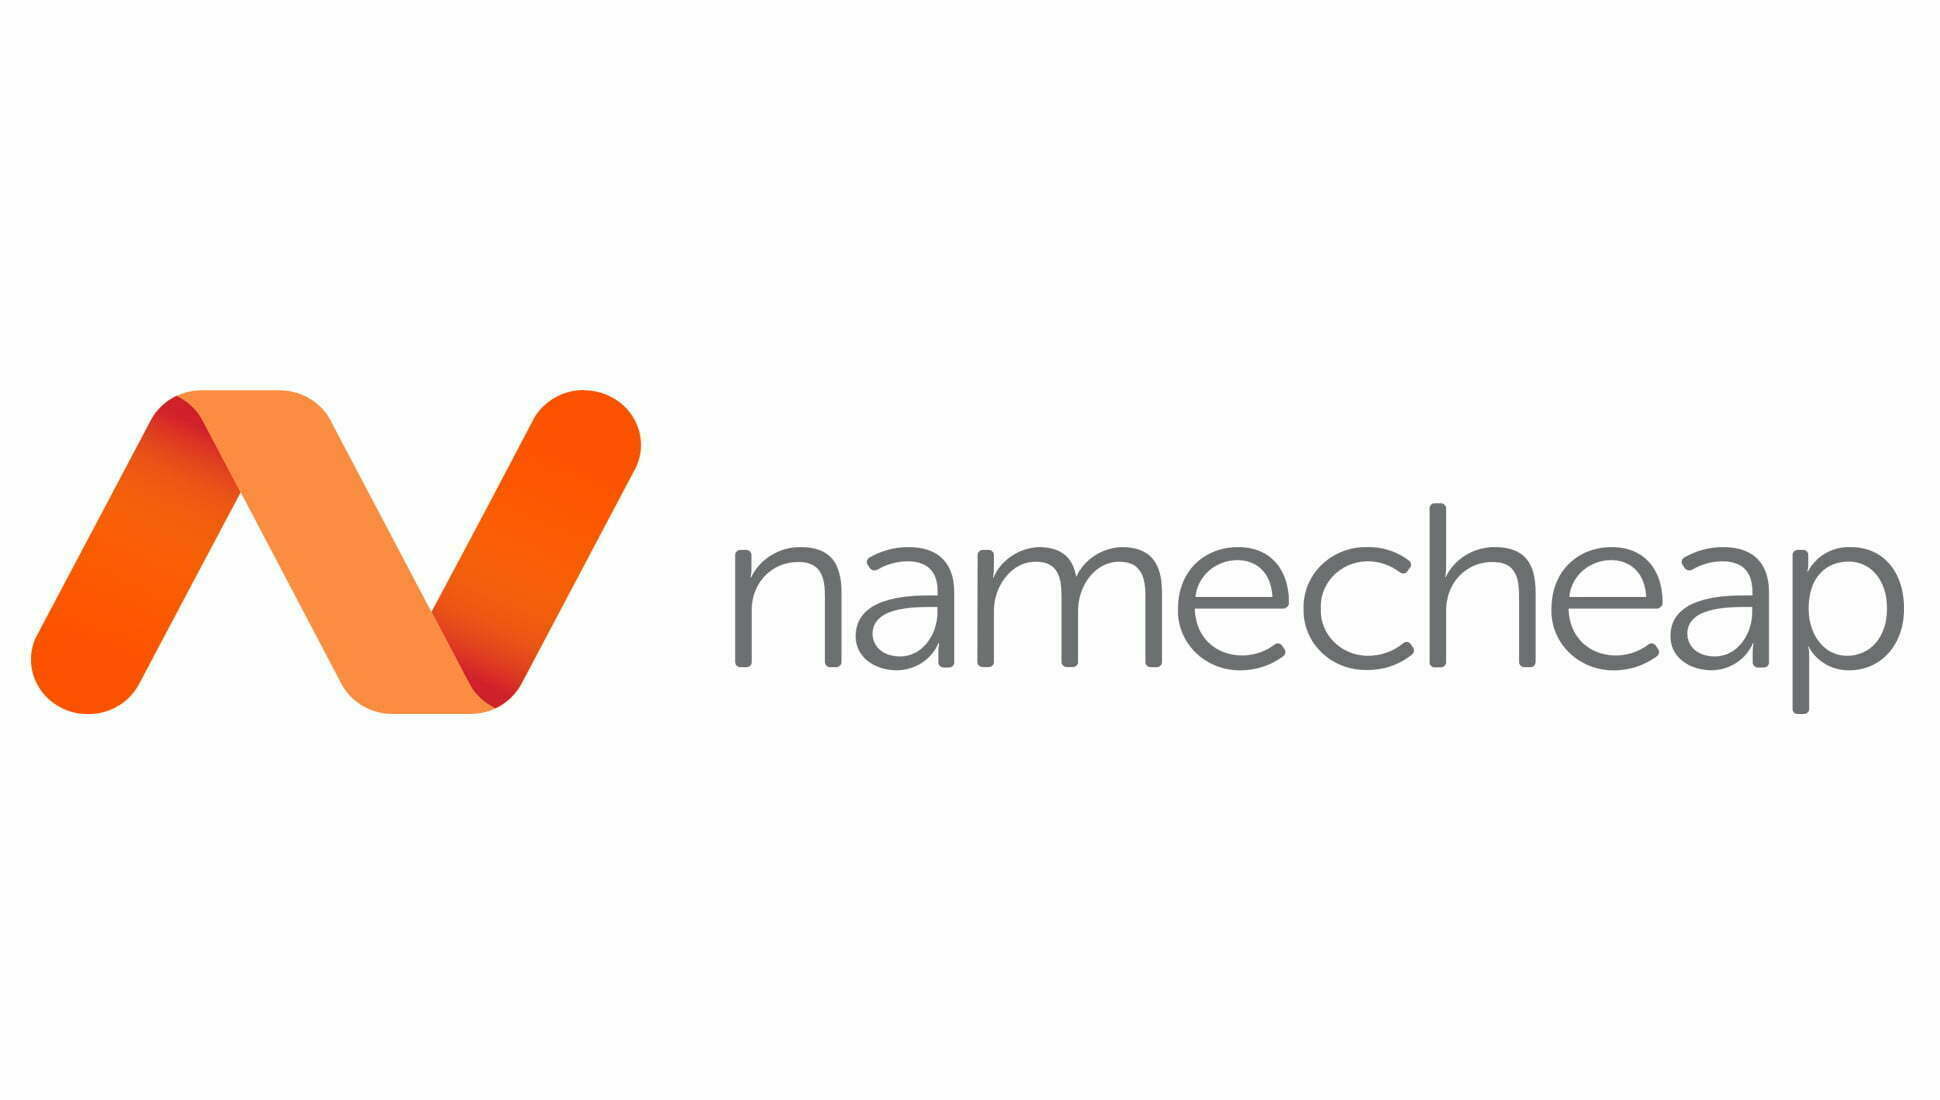 Namecheap-WeblifyAi's All Useful Tools